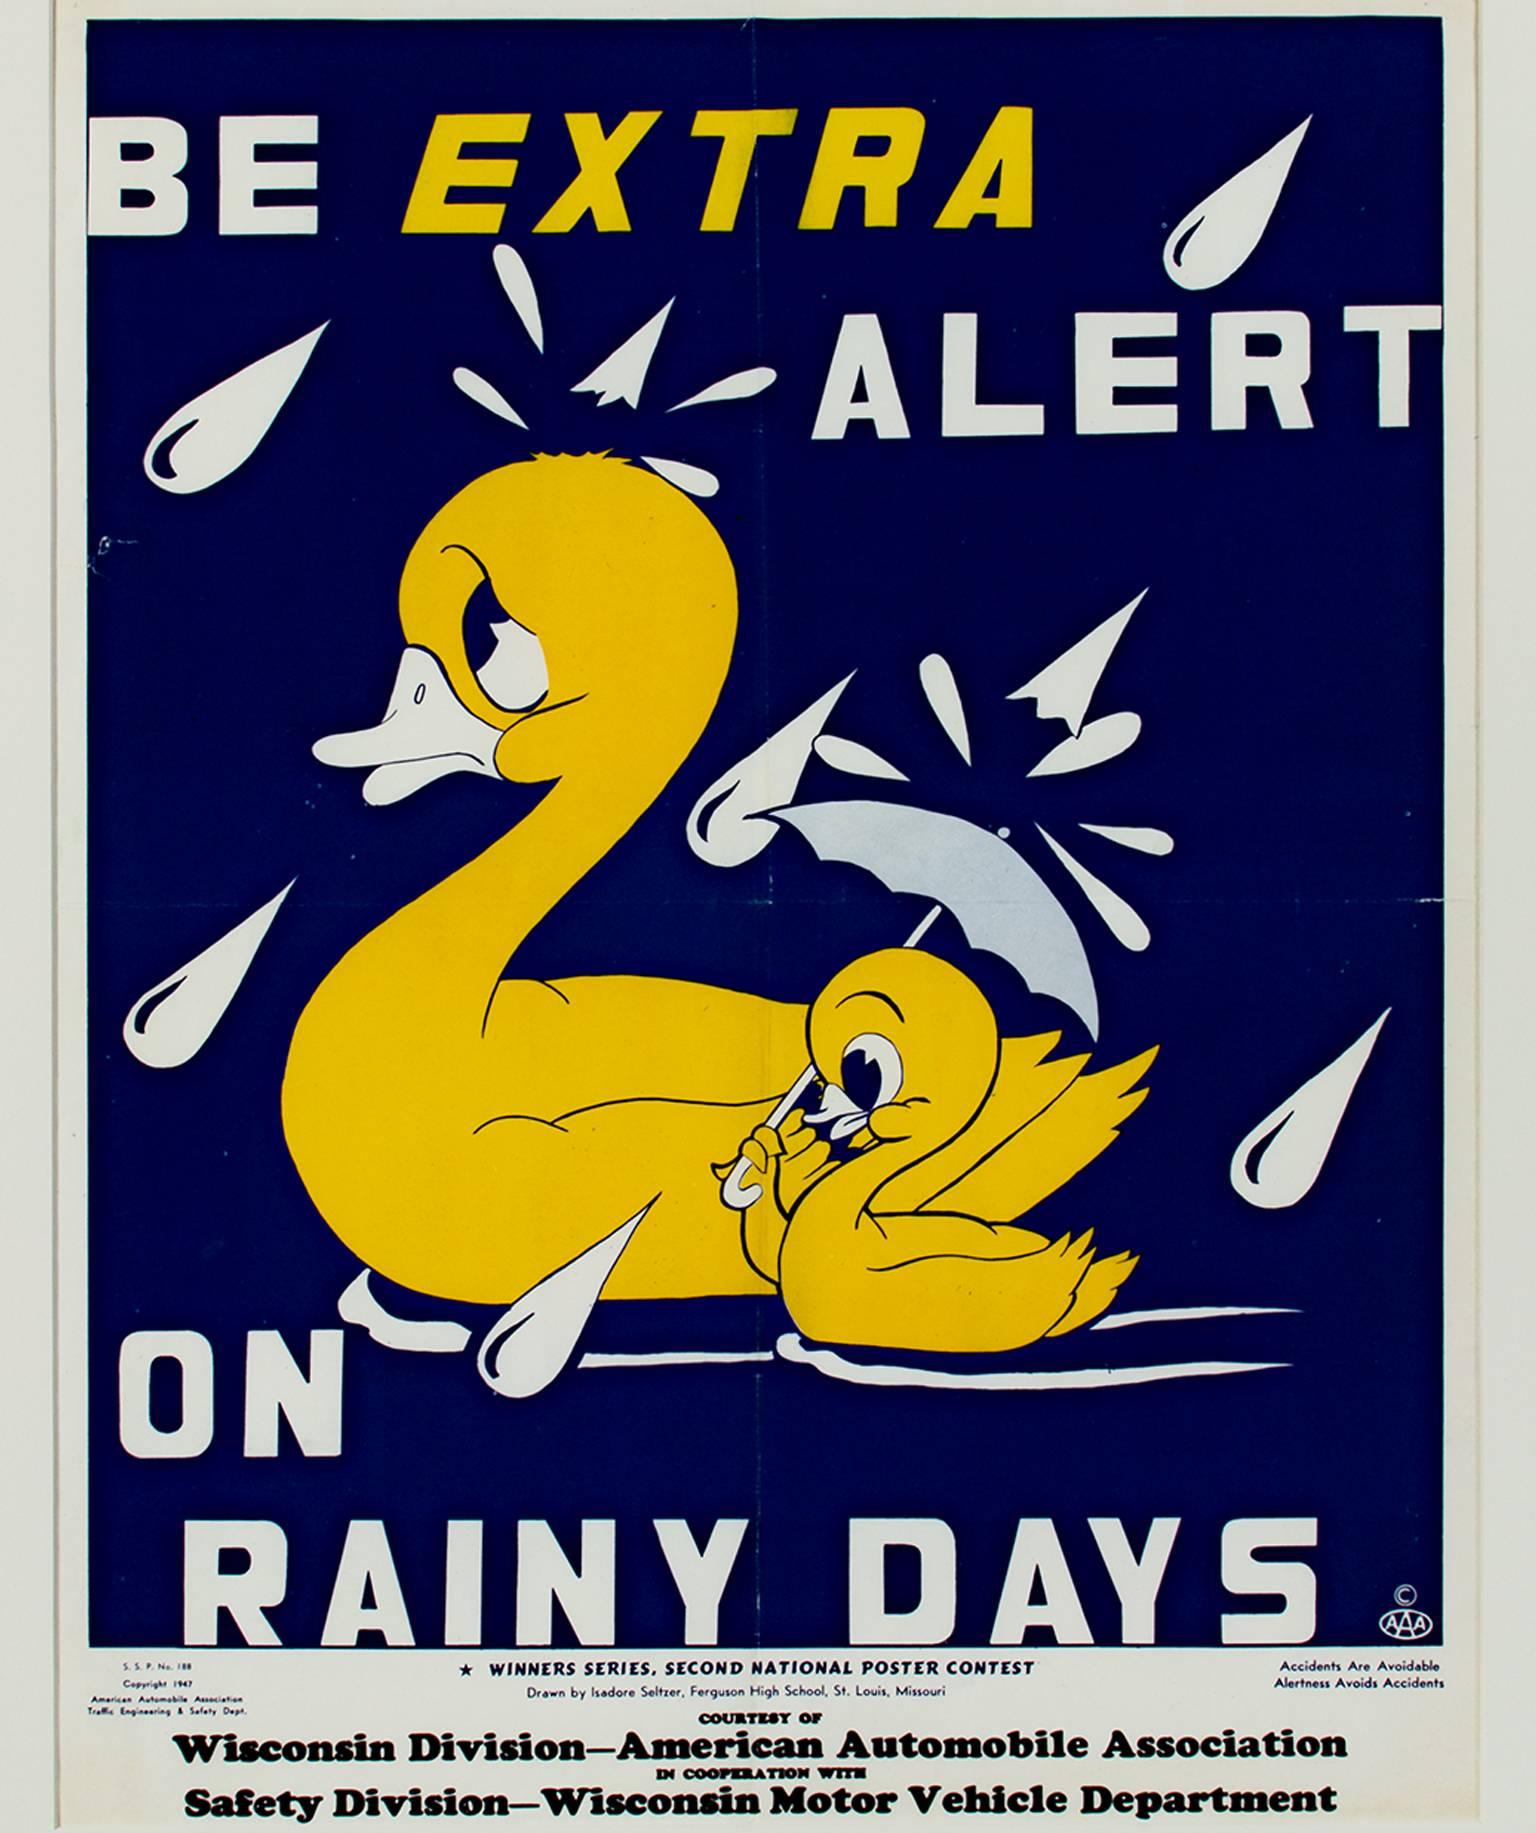 "Be Extra Alert on Rainy Days" ist ein von Isadore Seltzer für die Wisconsin Division der American Automobile Association gezeichnetes Farblithografie-Poster. Es zeigt zwei gelbe Enten auf dunkelblauem Hintergrund im Regen. Der eine hat einen